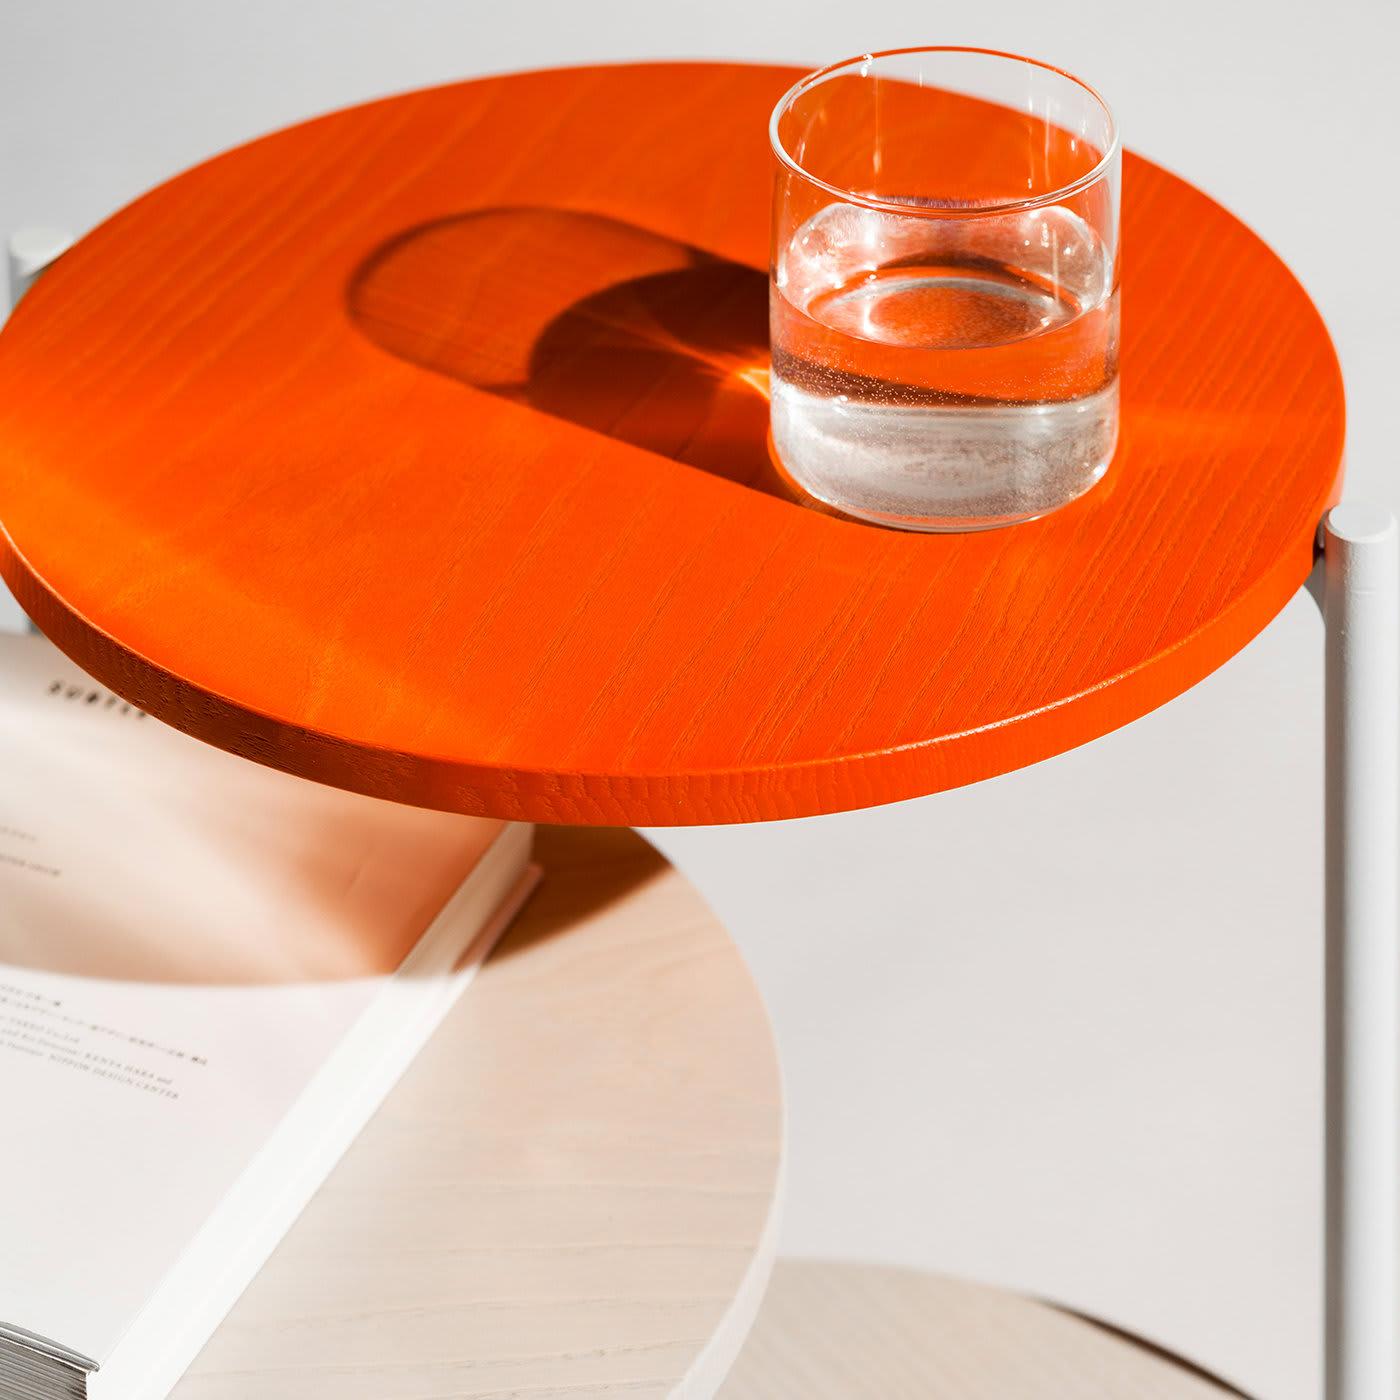 D'un design délicieusement pratique, cette table triple Triplo constitue un ajout élégant et fonctionnel à votre espace de vie préféré. Avec ses trois plateaux de table en bois massif coloré fixés à un cadre de support en métal gris, le design épuré